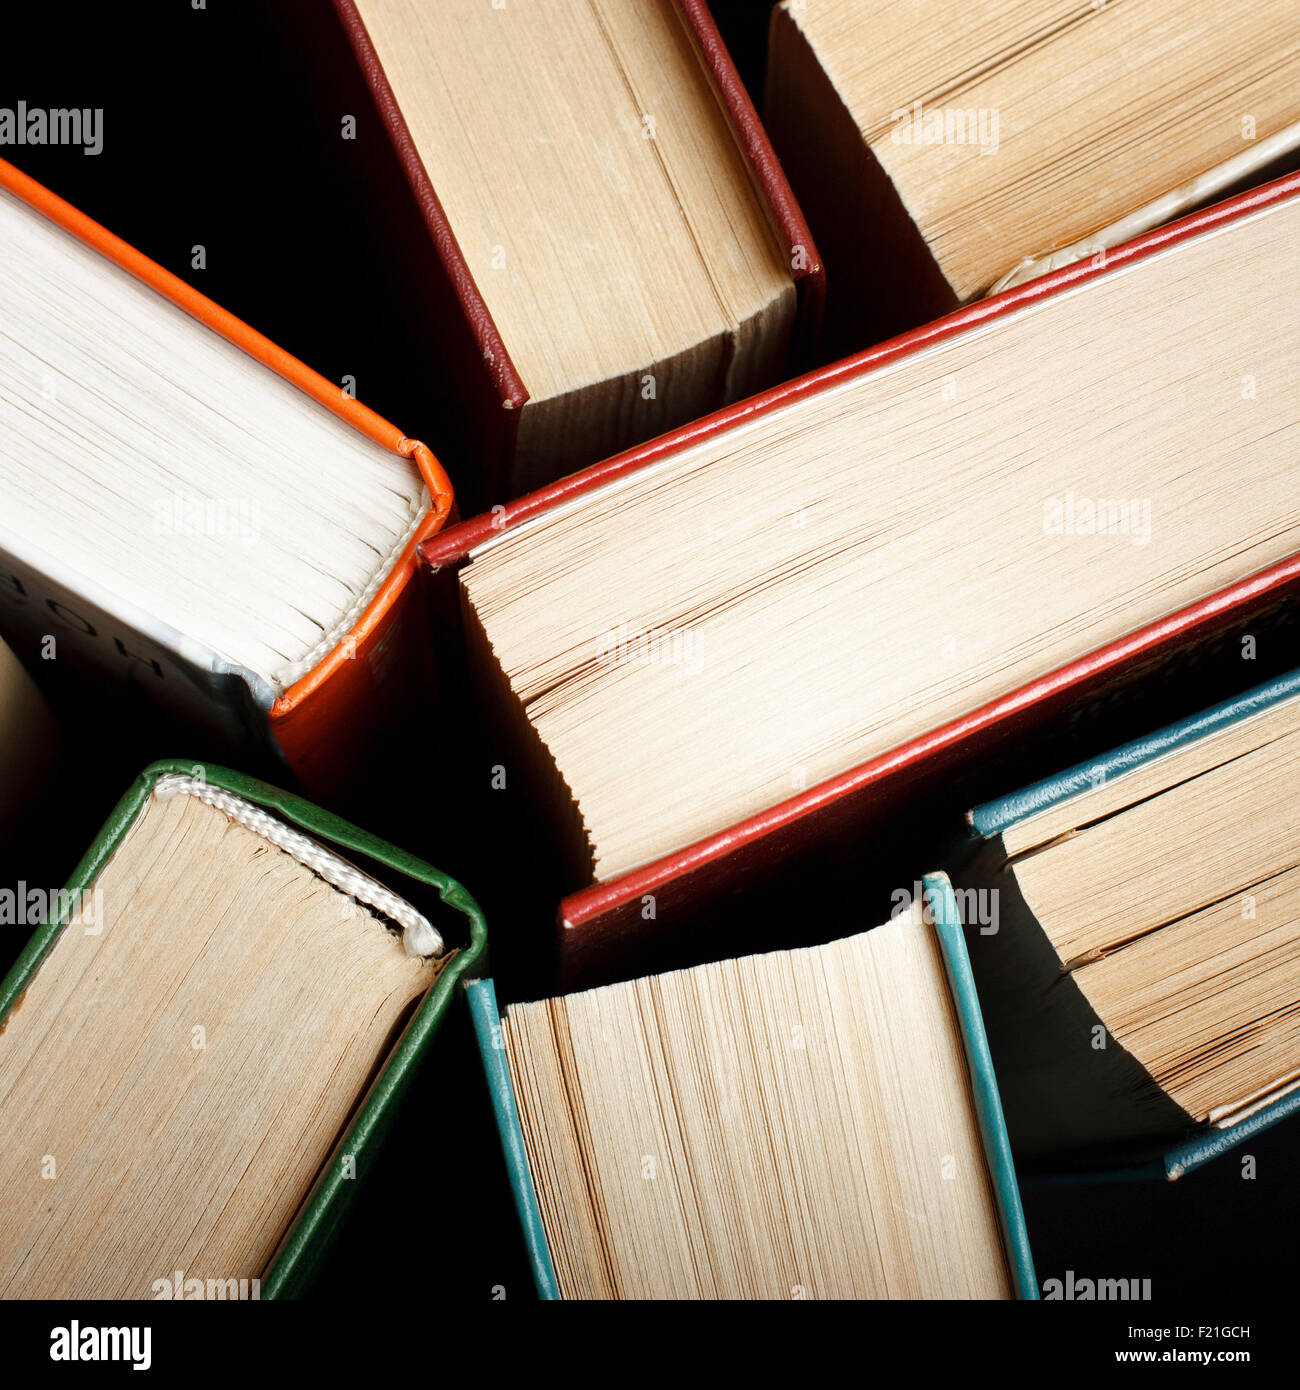 Alte und gebrauchte Hardcover Bücher oder Bücher von oben gesehen. Bücher und lesen sind unerlässlich für Selbstverbesserung, wissen und Erfolg in der Karriere, Geschäfts- und Privatleben zu gewinnen Stockfoto